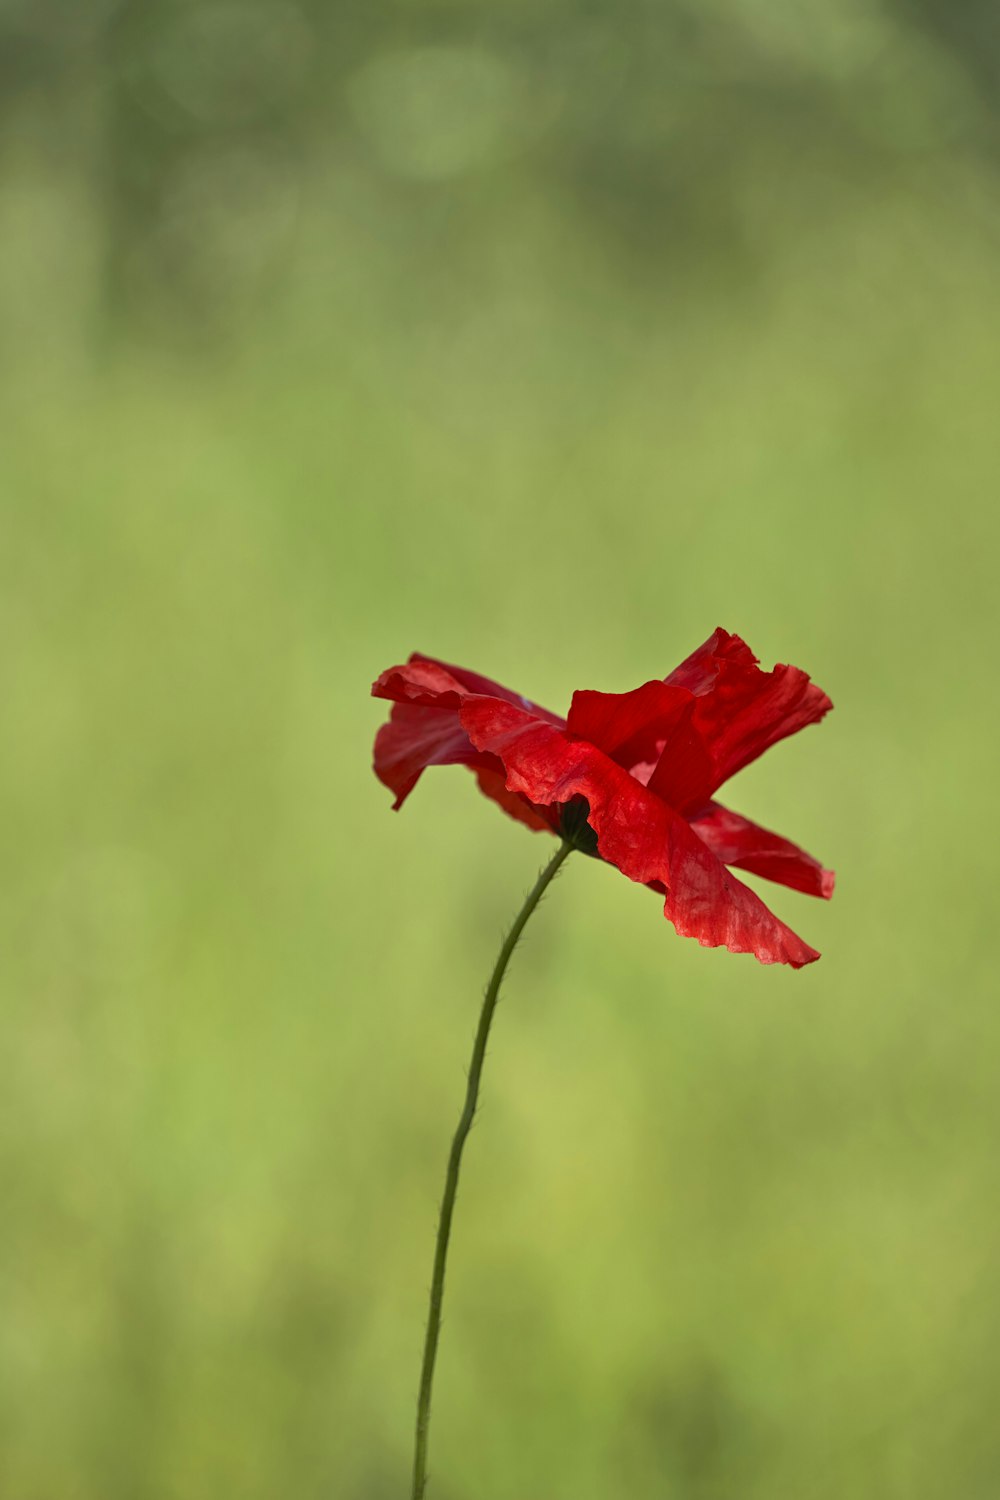 Una sola flor roja con un fondo borroso